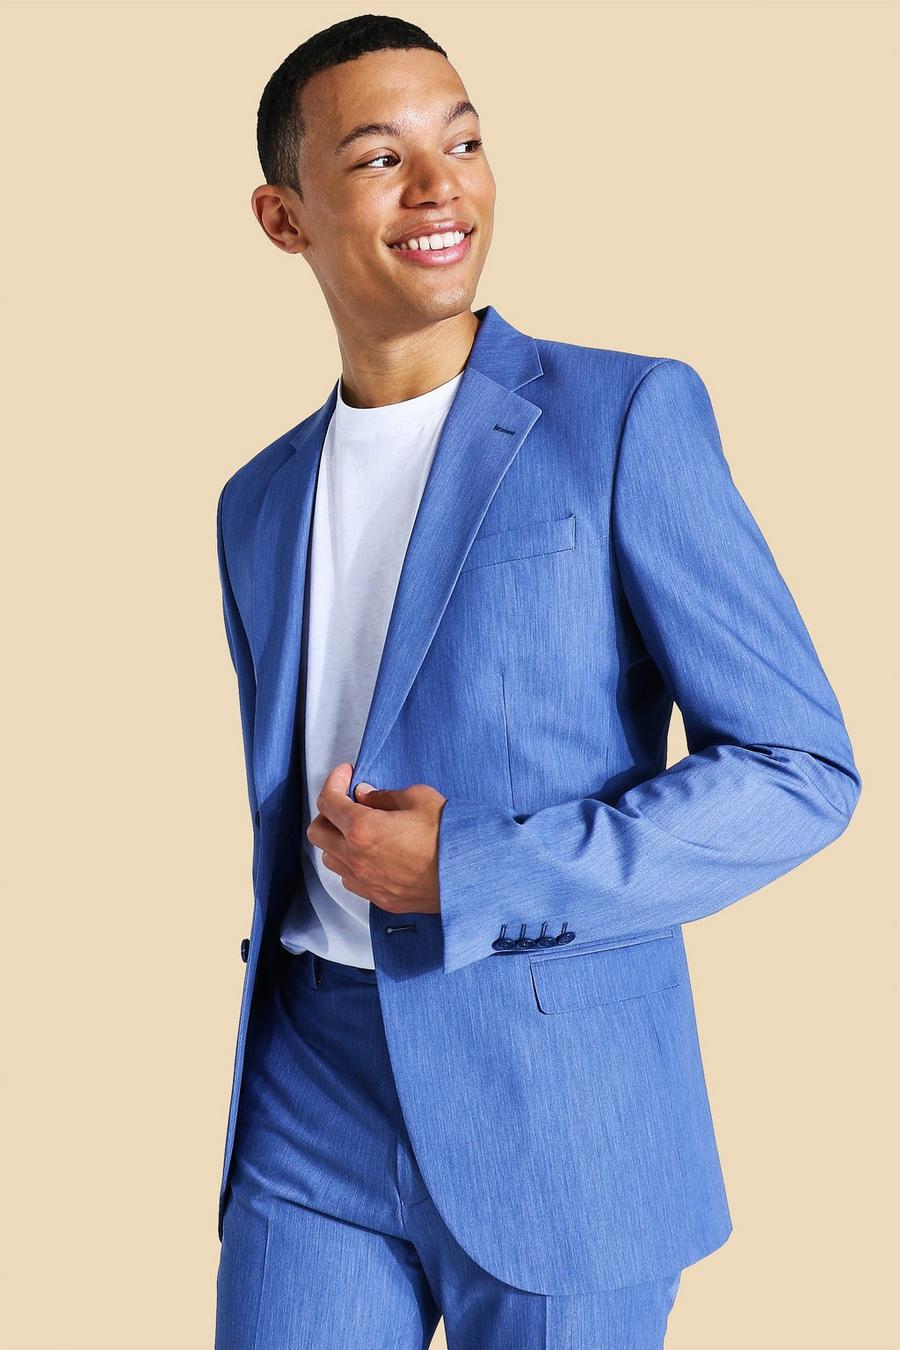 כחול azzurro ז'קט חליפה סקיני עם רכיסה אחת לגברים גבוהים